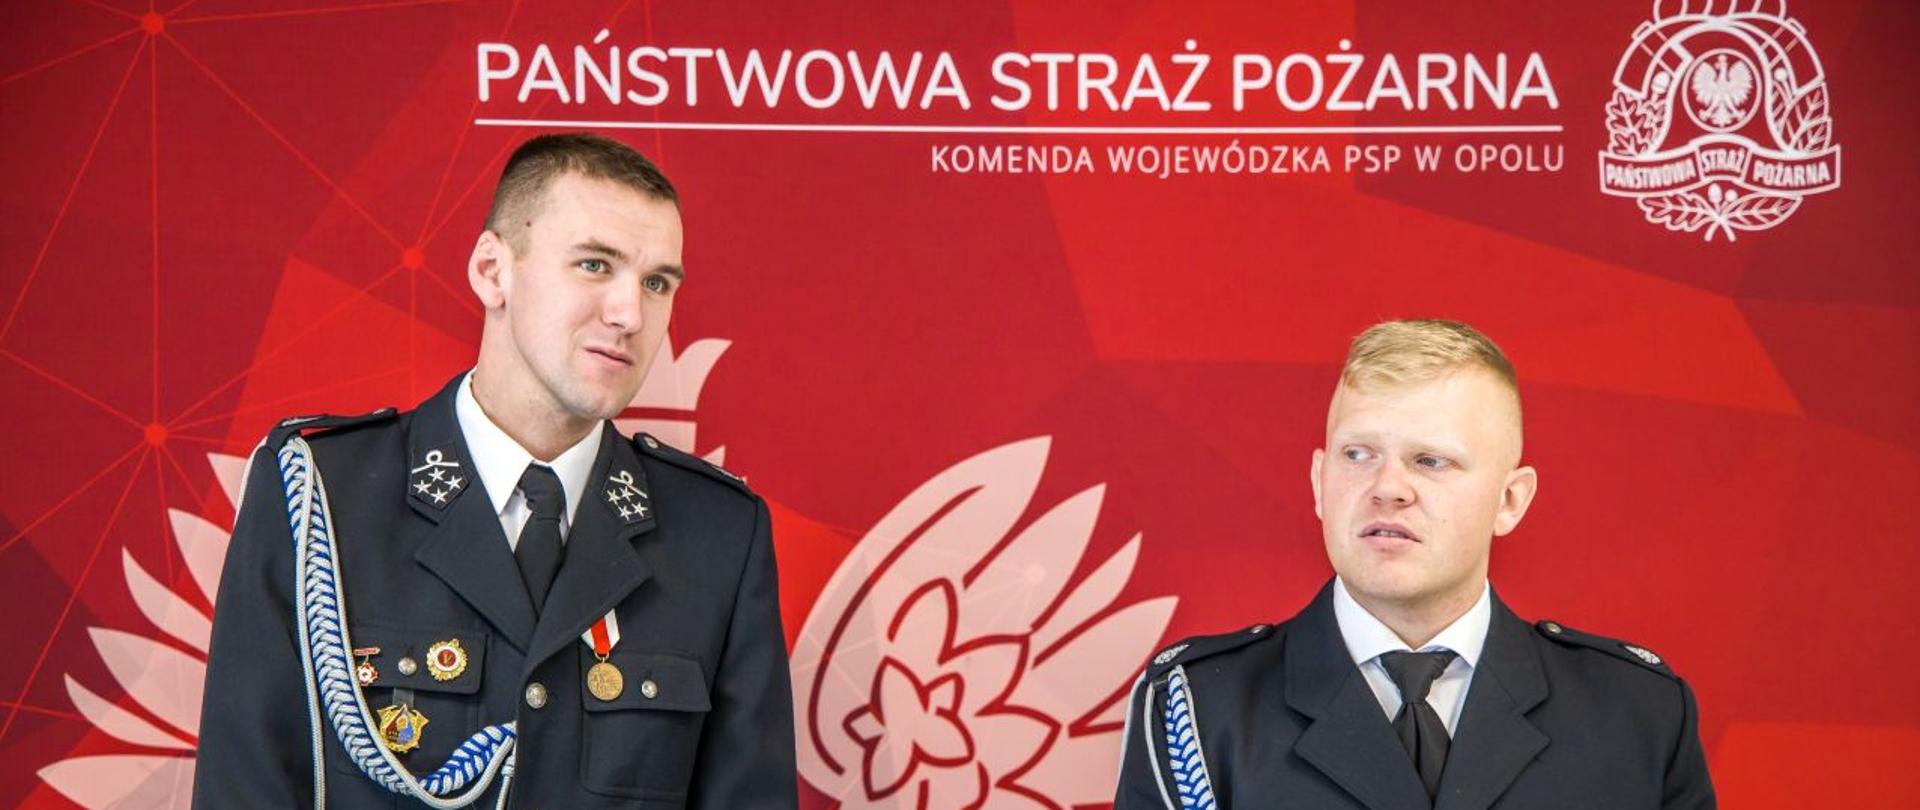 Dh Adam Szczęsny i dh Dawid Jakusz z OSP Osowiec w umundurowaniu wyjściowym stoją na tle ścianki Państwowej Straży Pożarnej koloru czerwonego z logo PSP i Godłem Polski.